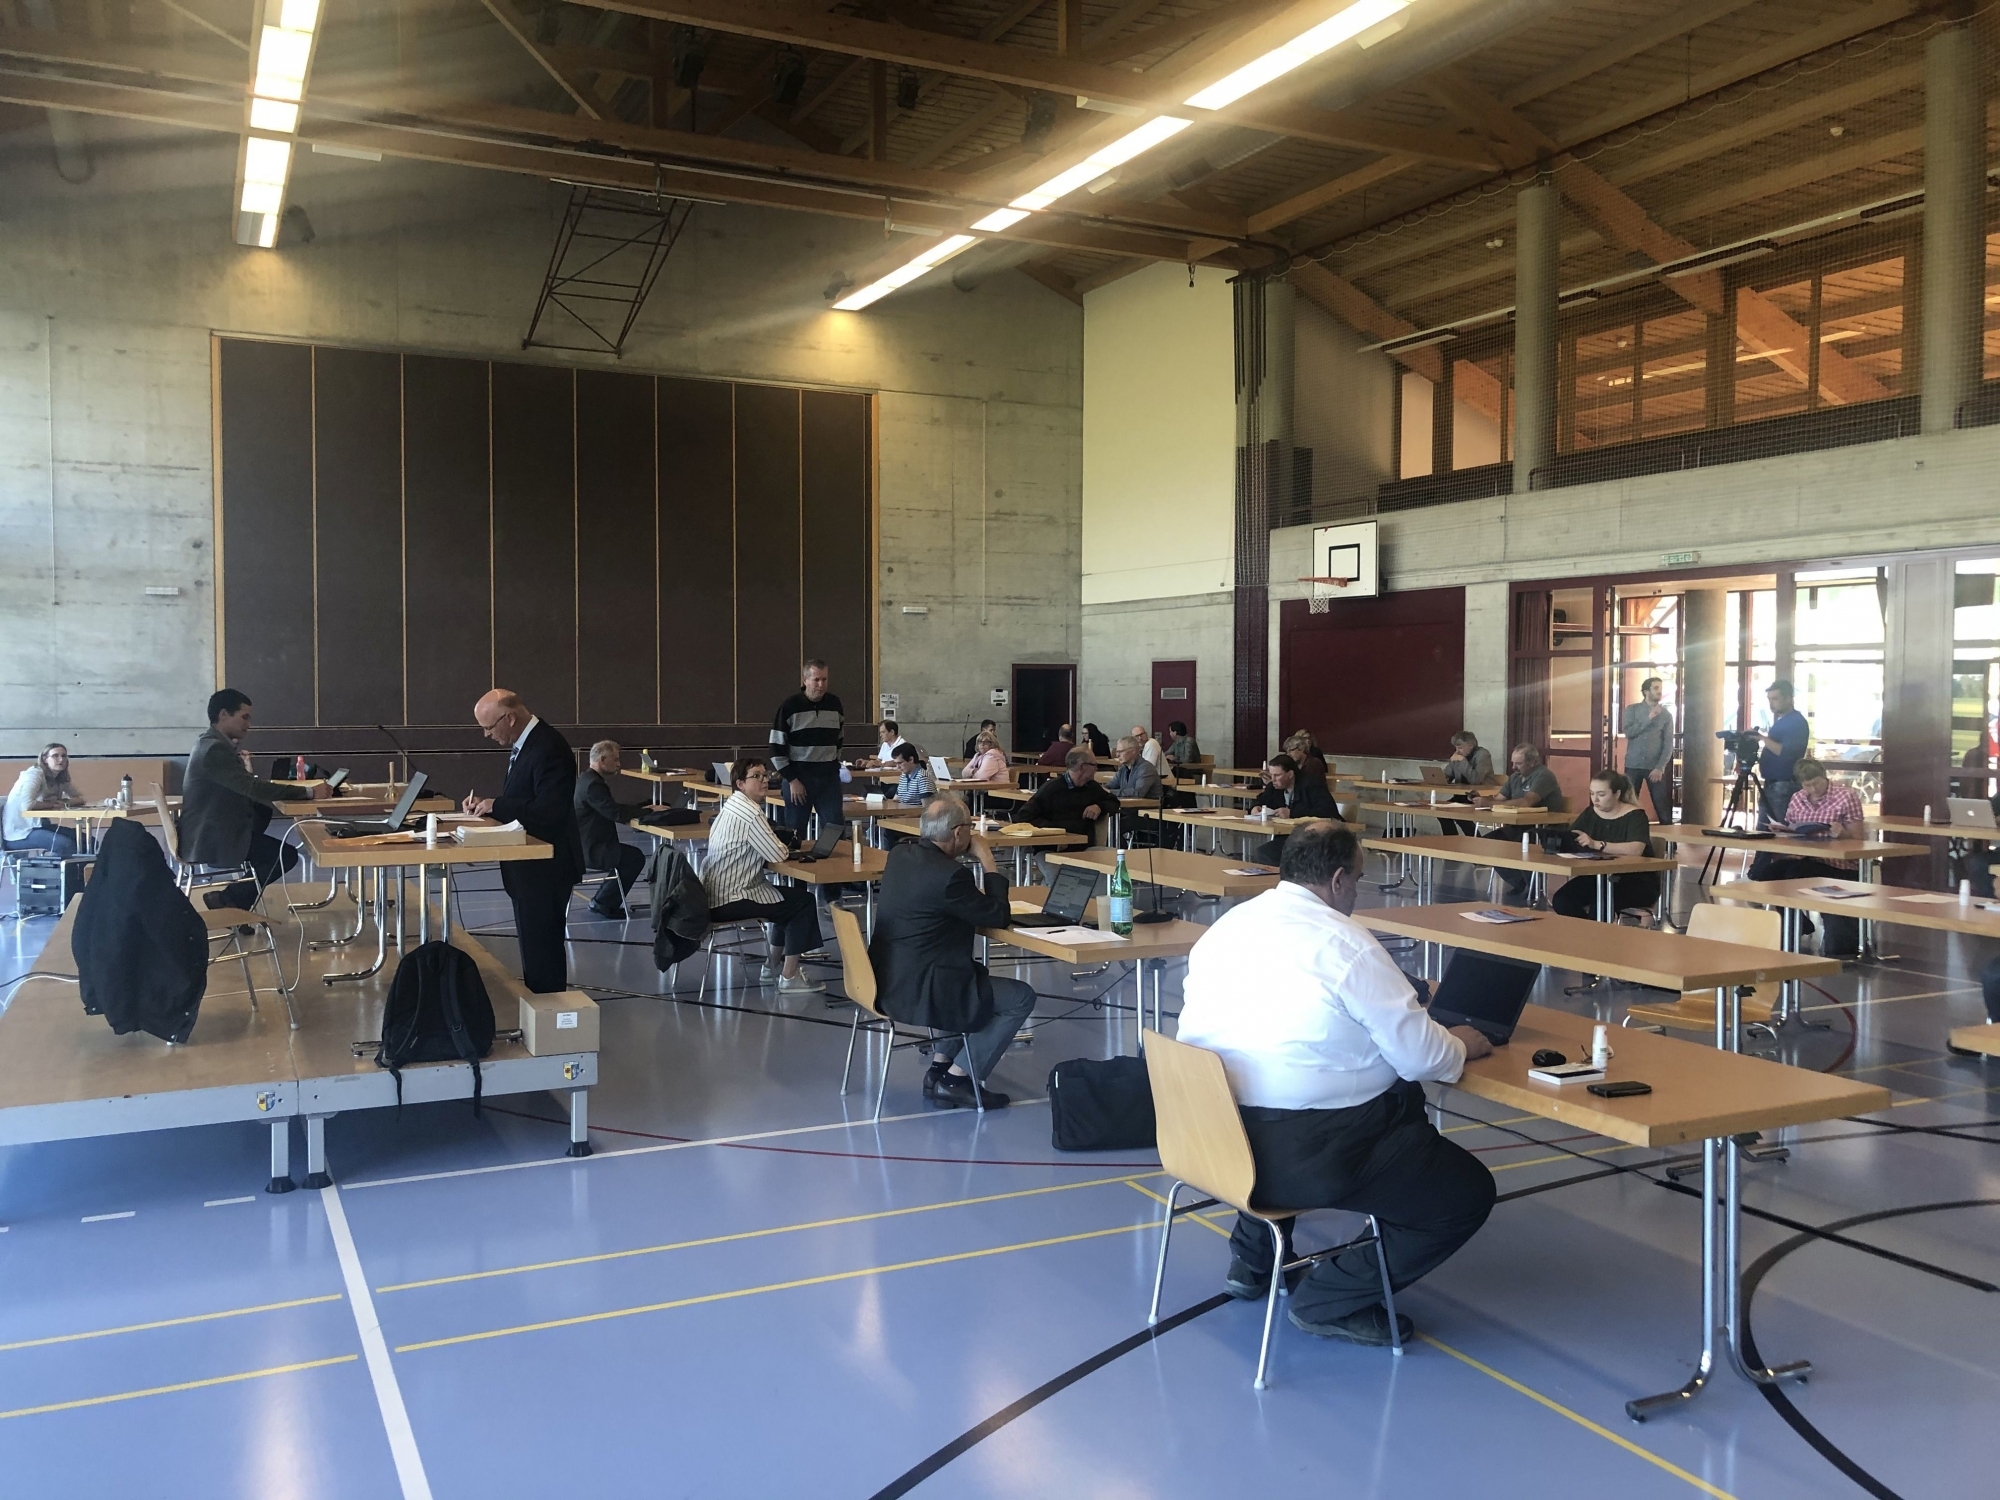 La séance du Conseil général de Val-de-Ruz s'est déroulée dans la salle de gym de la Rebatte, à Chézard, afin de respecter les distances de sécurité.